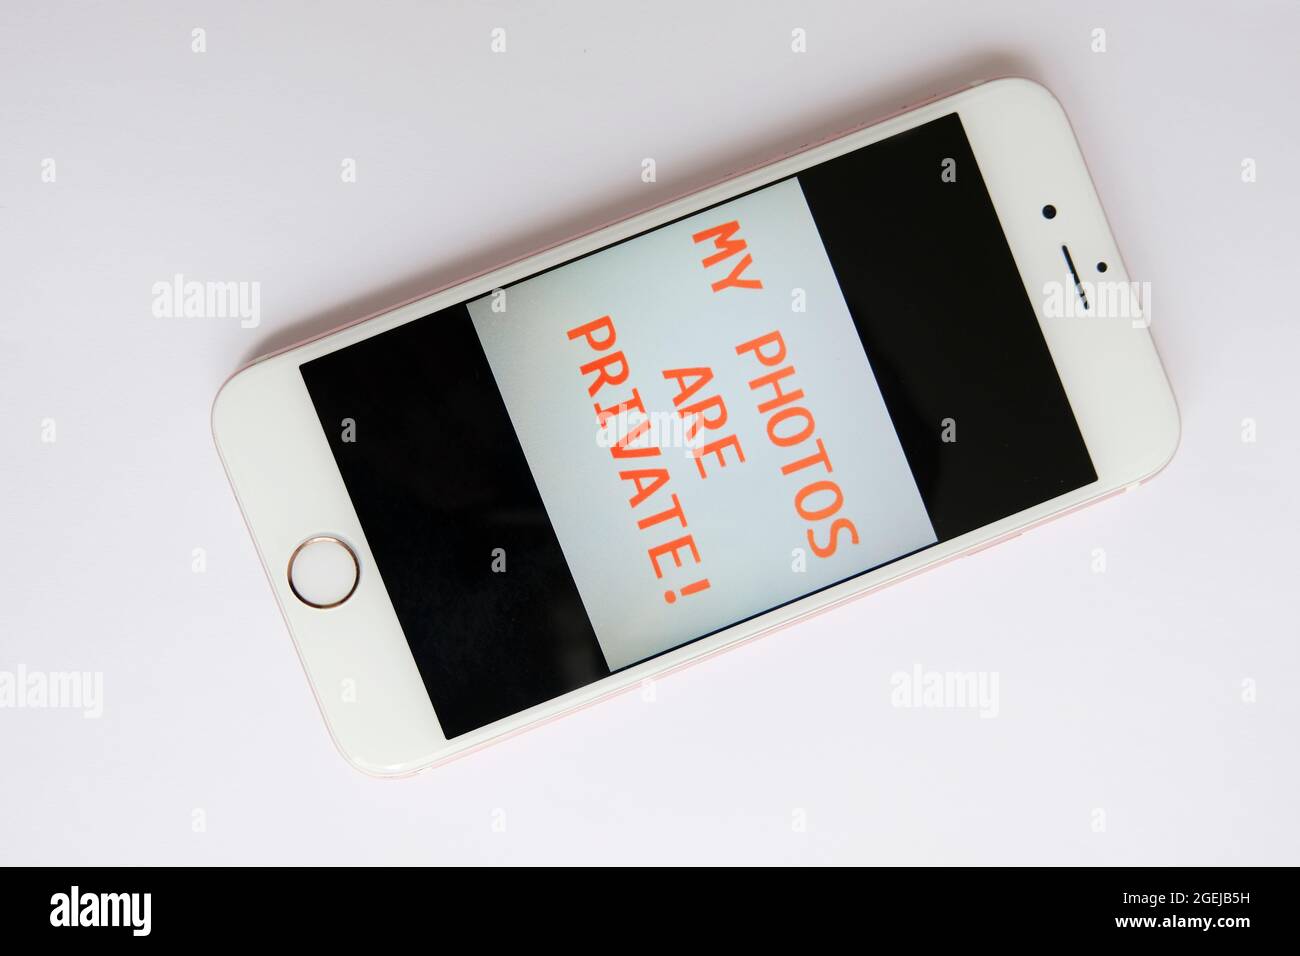 IPhone avec message de sécurité de son propriétaire aux snoopers Banque D'Images